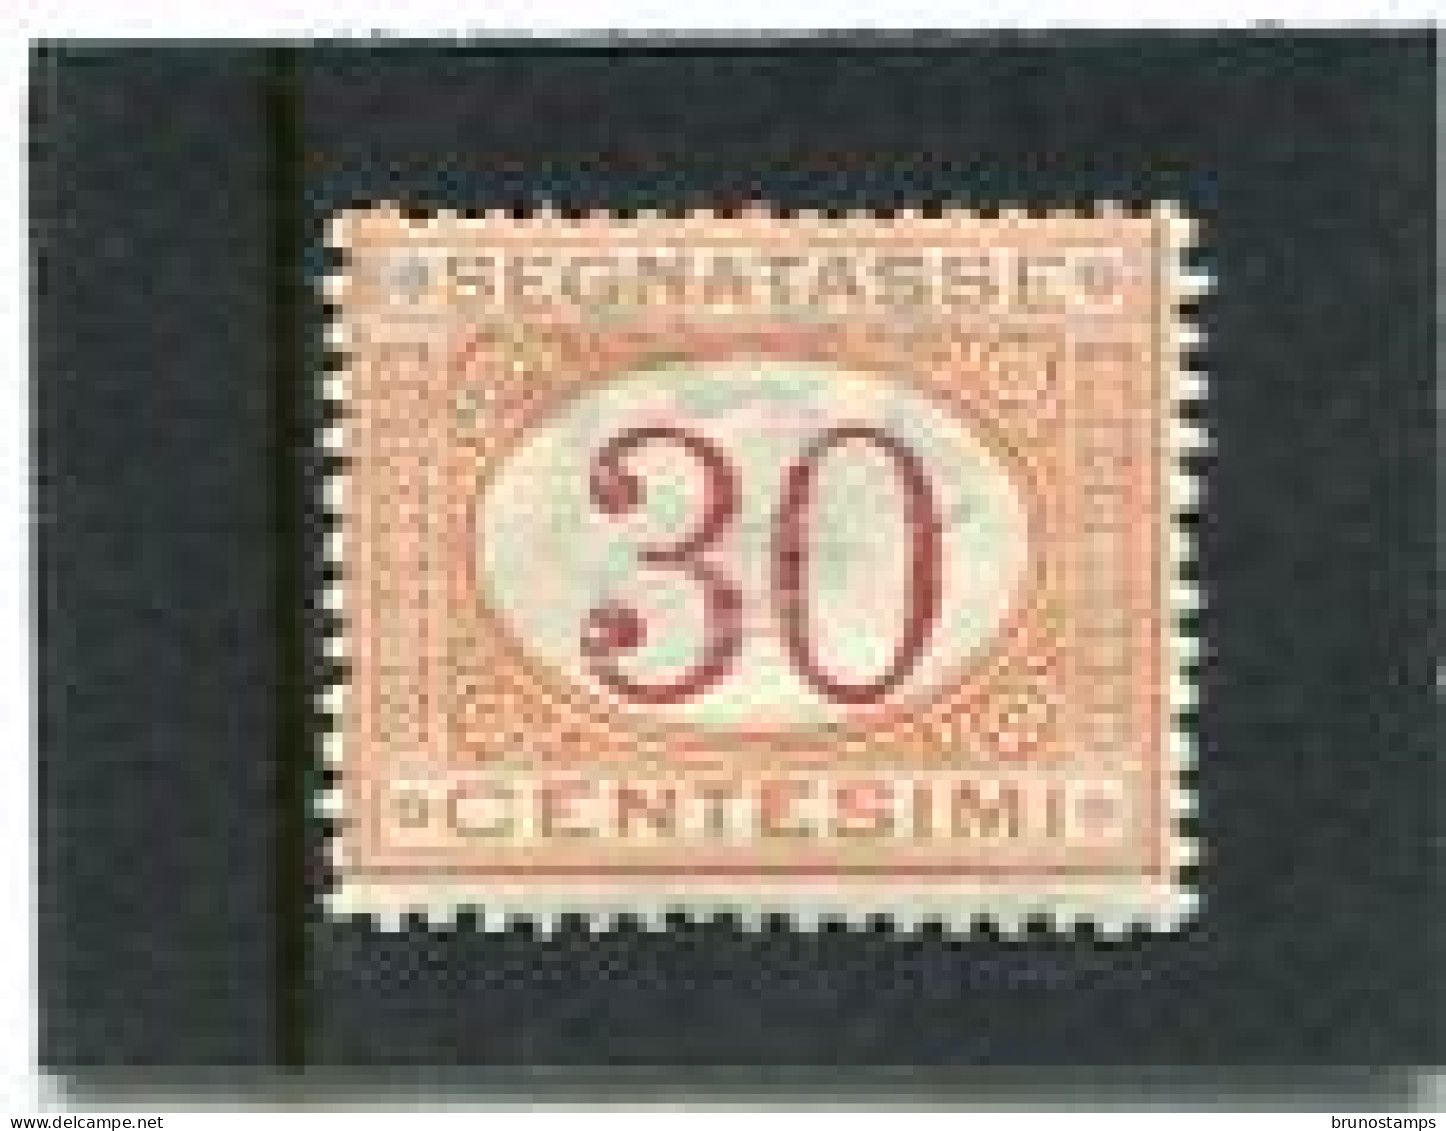 ITALY/ITALIA - 1890  POSTAGE DUE  30c  MINT NH - Segnatasse